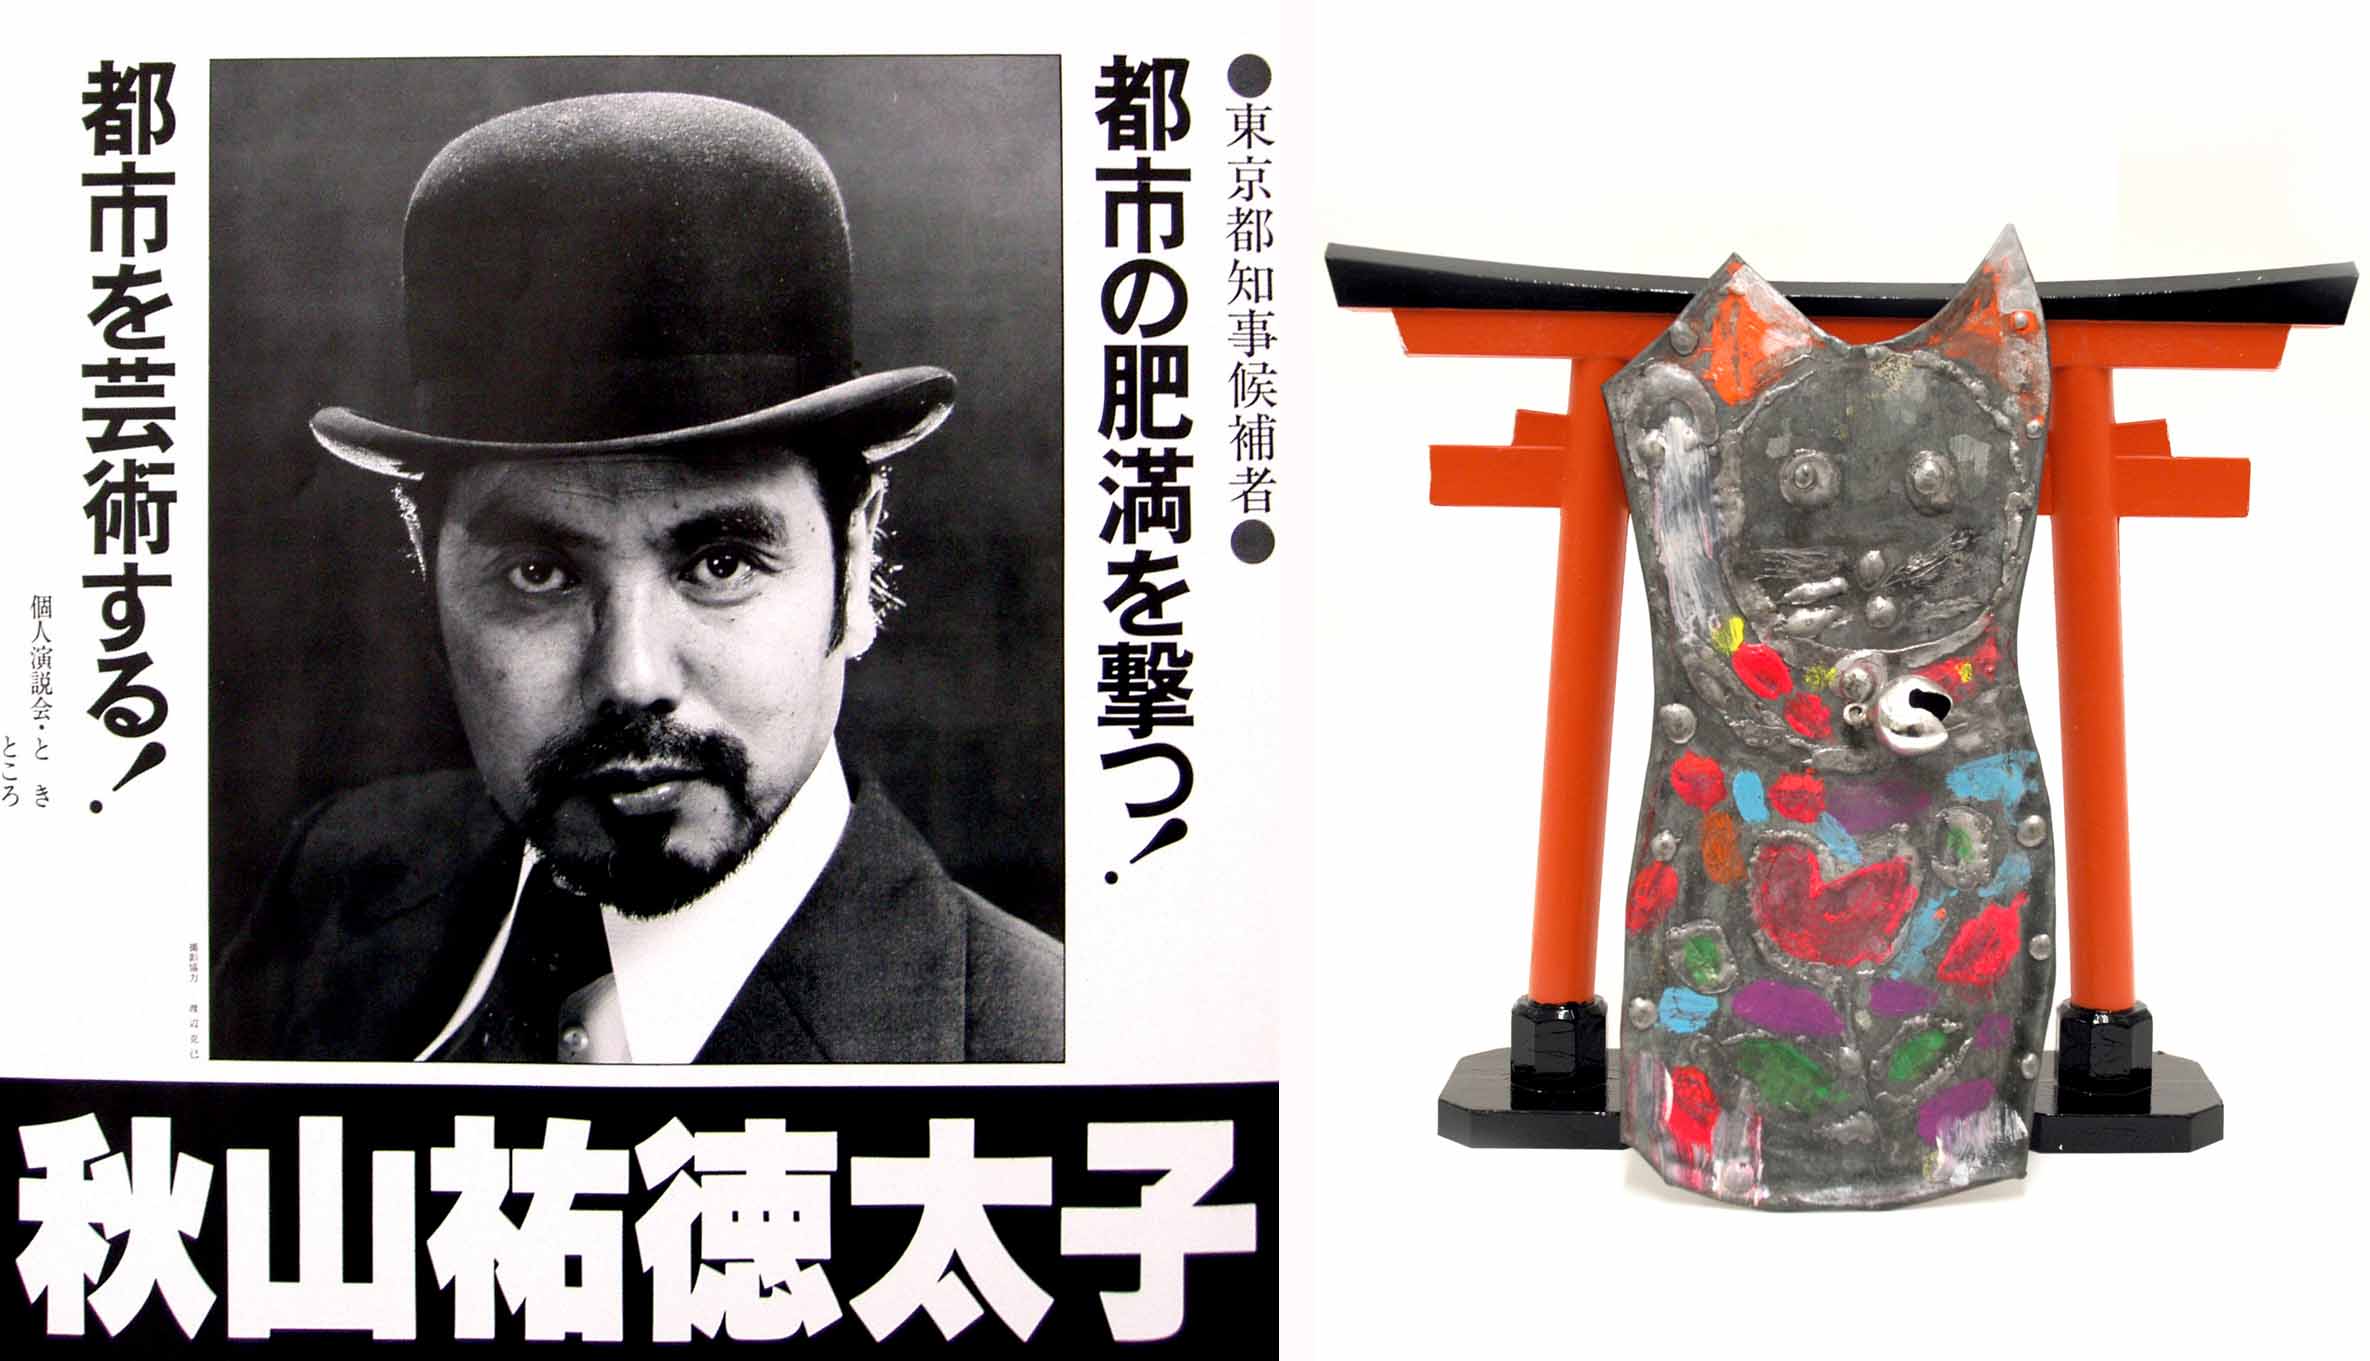 (左)「東京都知事選挙ポスター」1979年、(右)「開運招き猫」ブリキ 